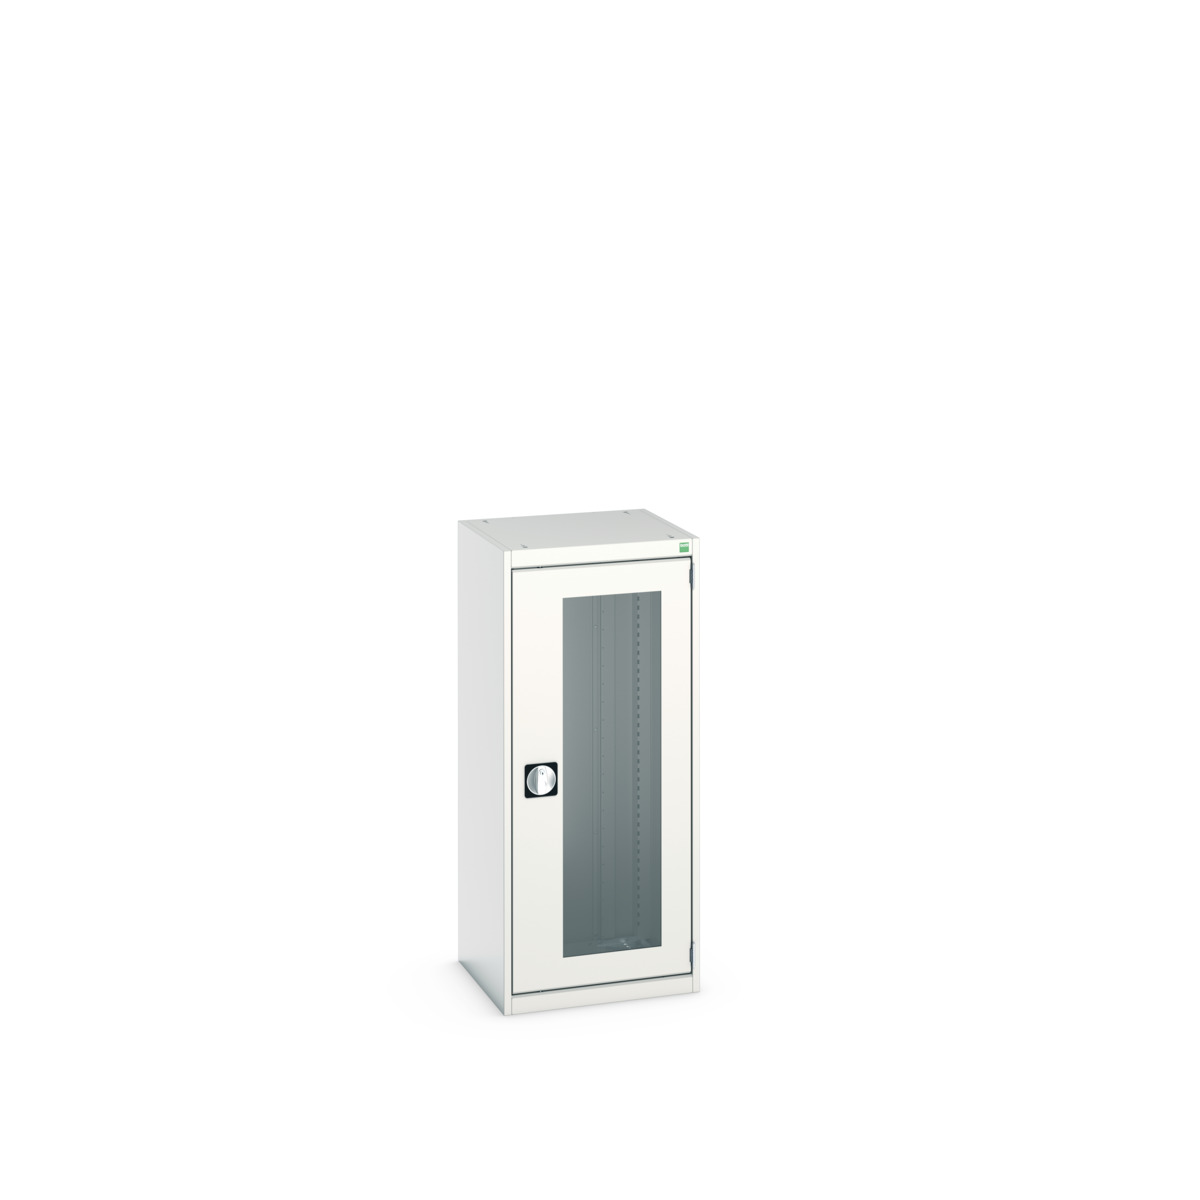 40010129.16V - cubio cupboard